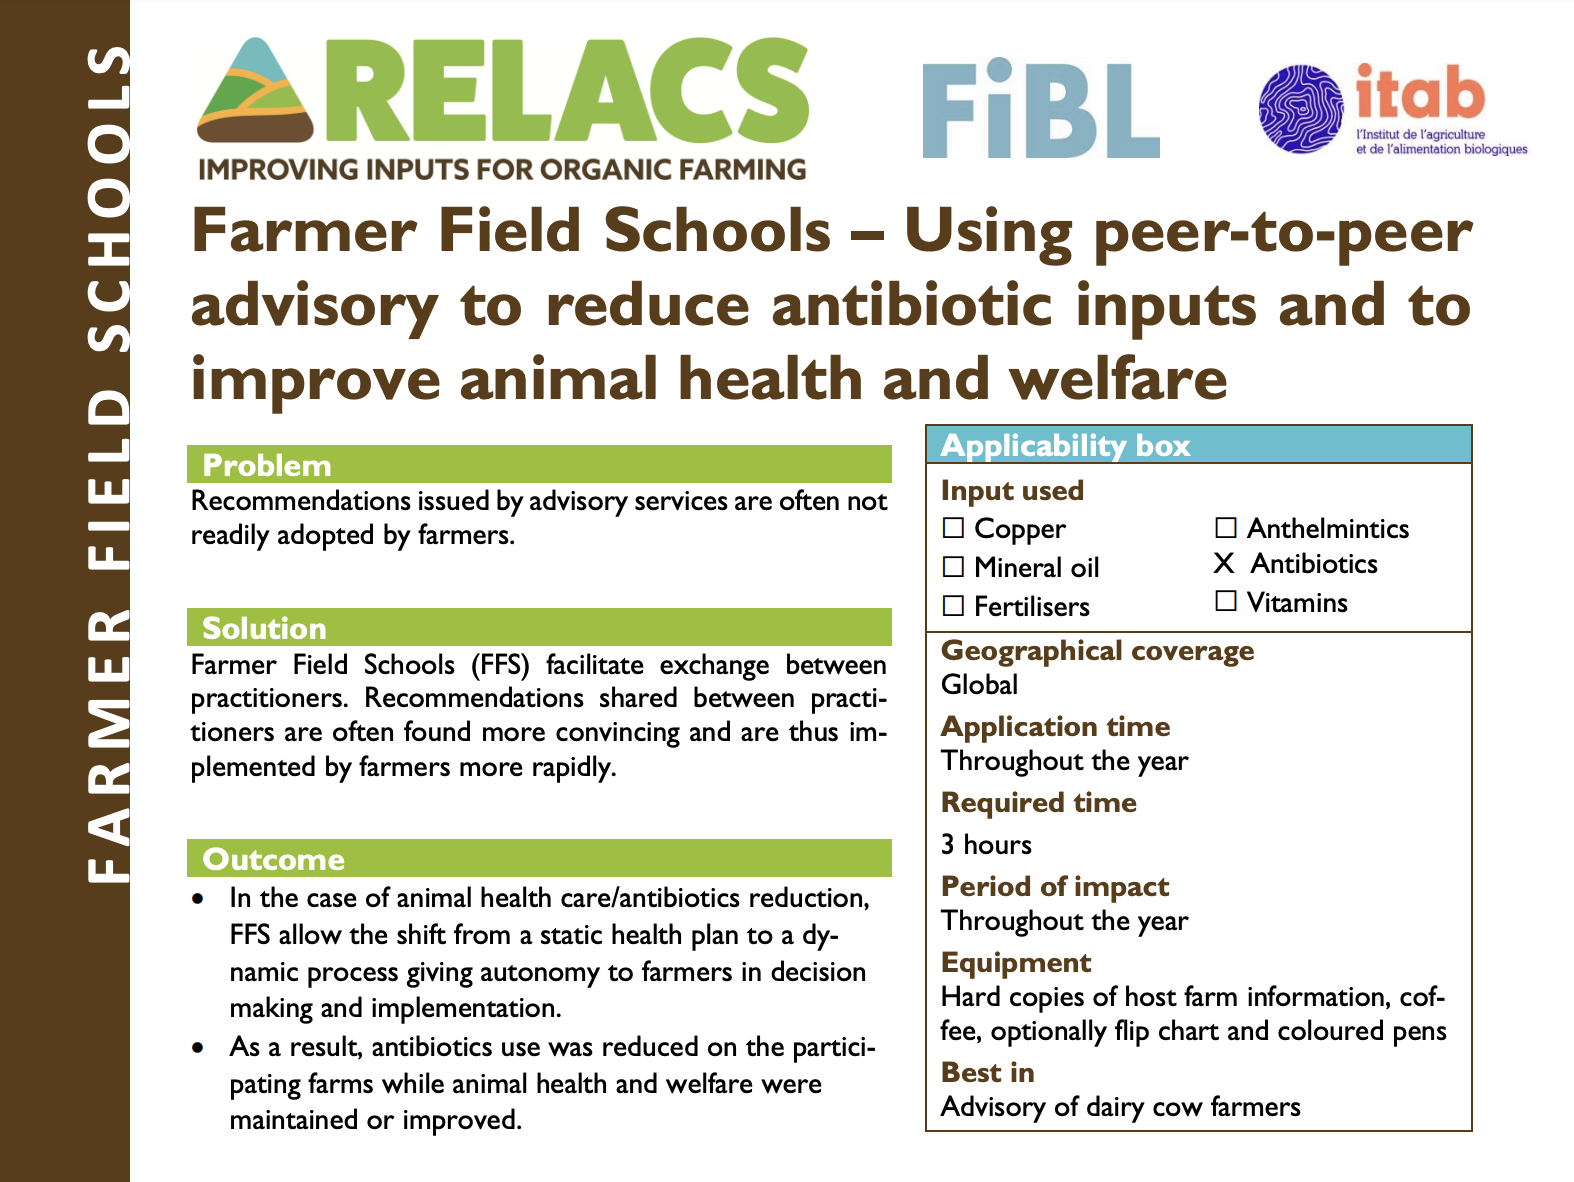 Farmer Field Schools – Korzystanie z doradztwa peer-to-peer w celu zmniejszenia ilości antybiotyków oraz poprawy zdrowia i dobrostanu zwierząt (streszczenie praktyki RELACS)